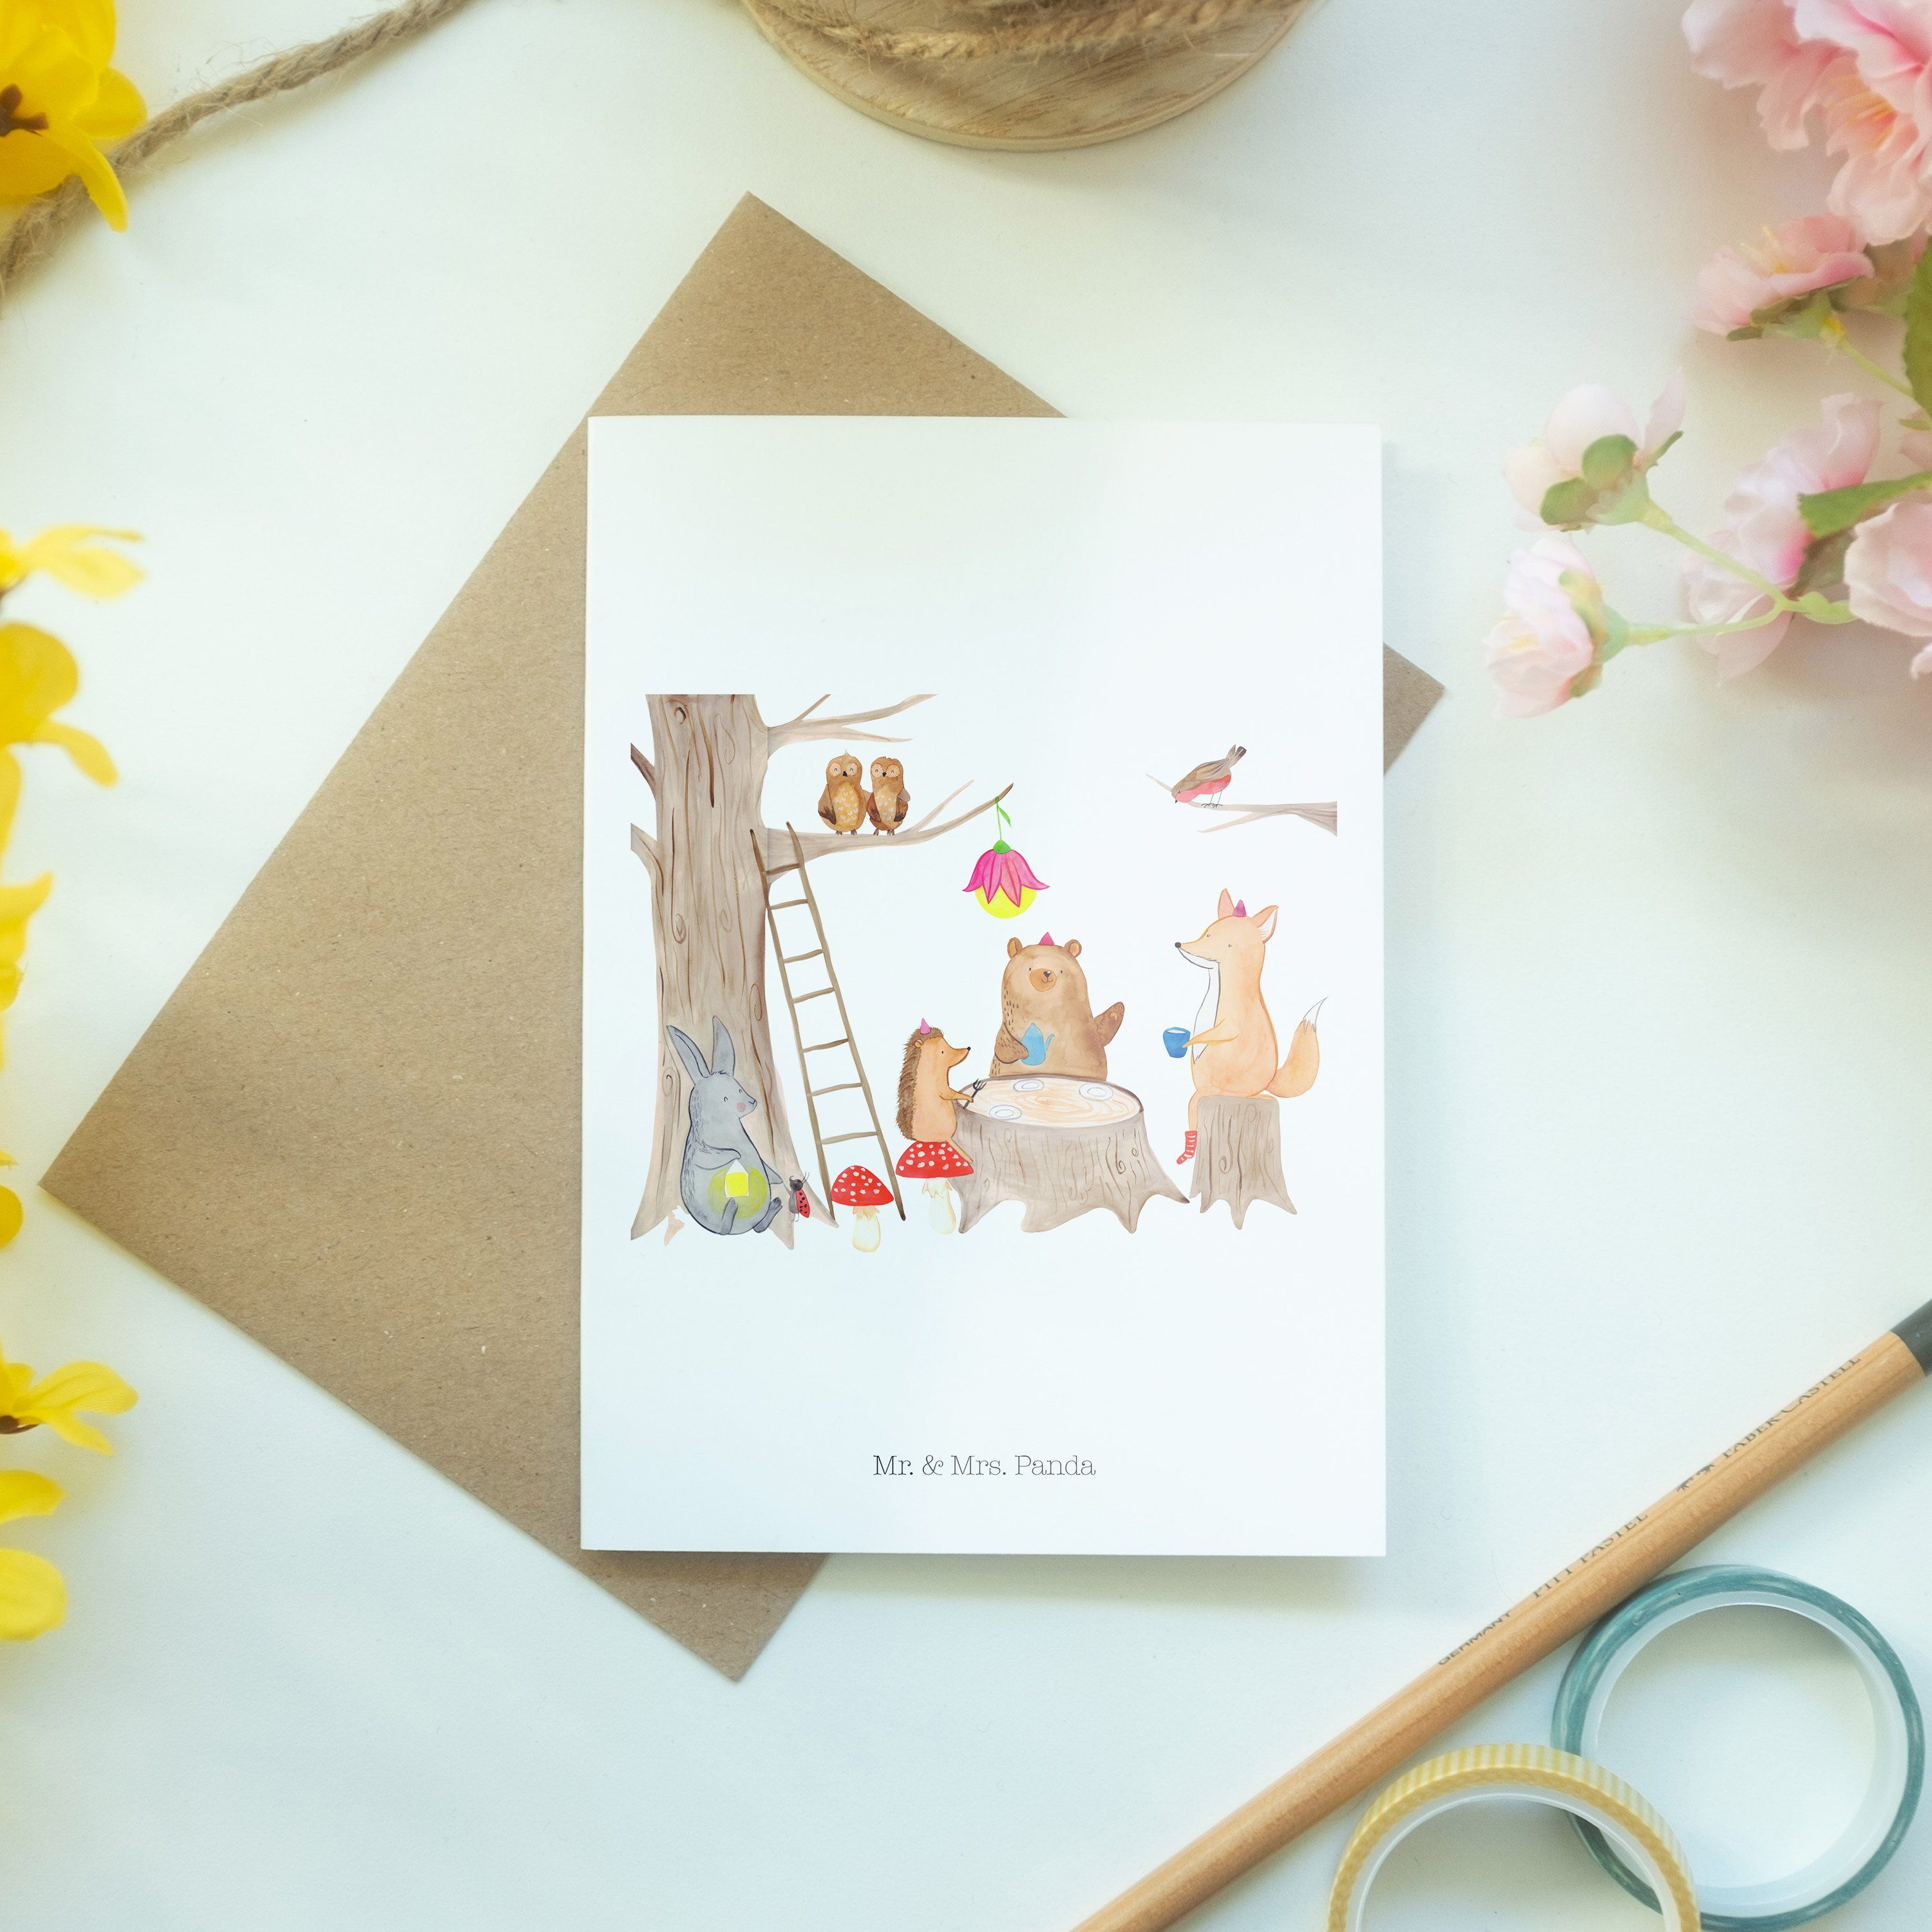 & Picknick Geschenk, Grußkarte - Panda Mrs. - Mr. Weiß Eichhörnchen Glückwunschkarte, Waldtiere